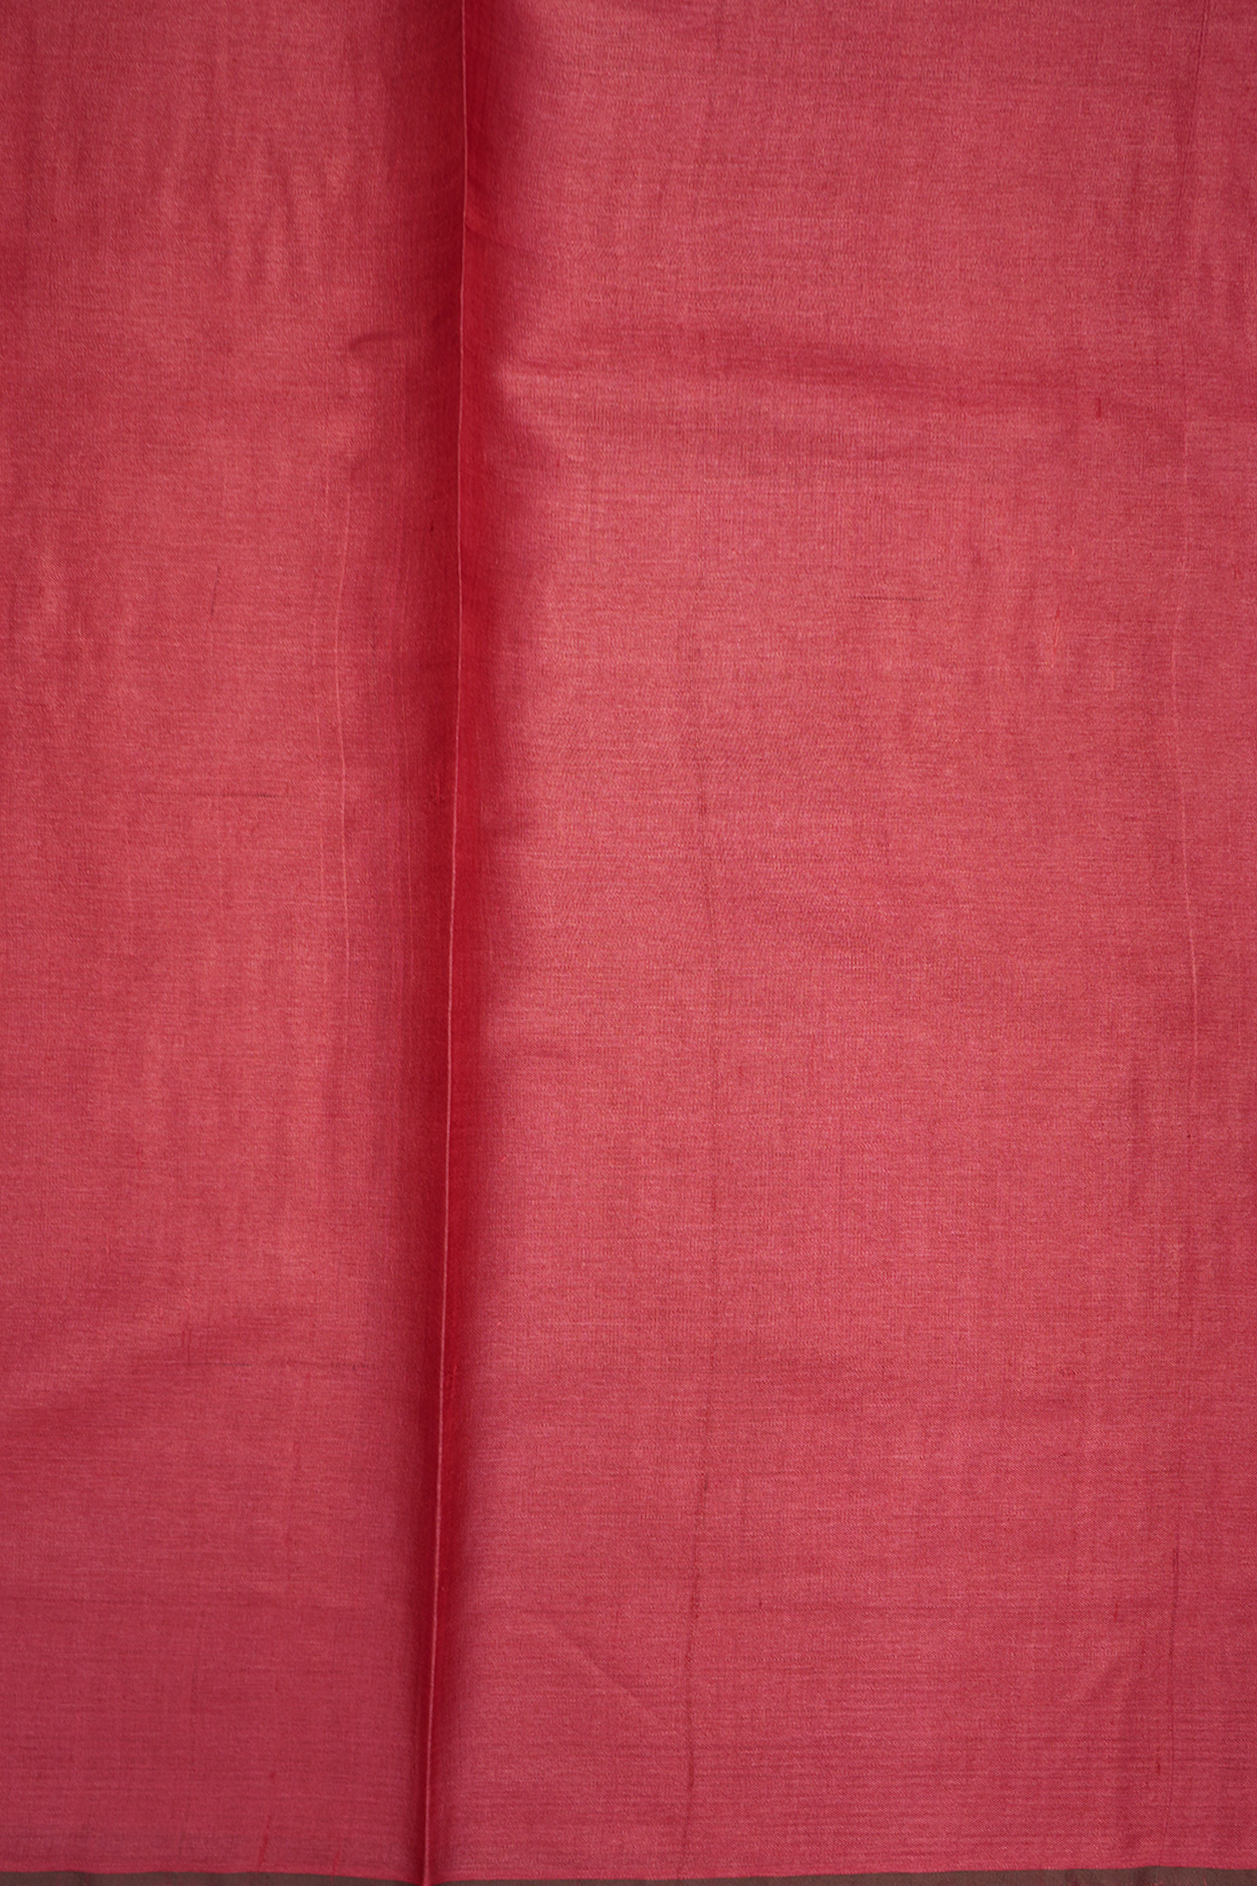 Threadwork Buttas Crimson Red Tussar Silk Saree